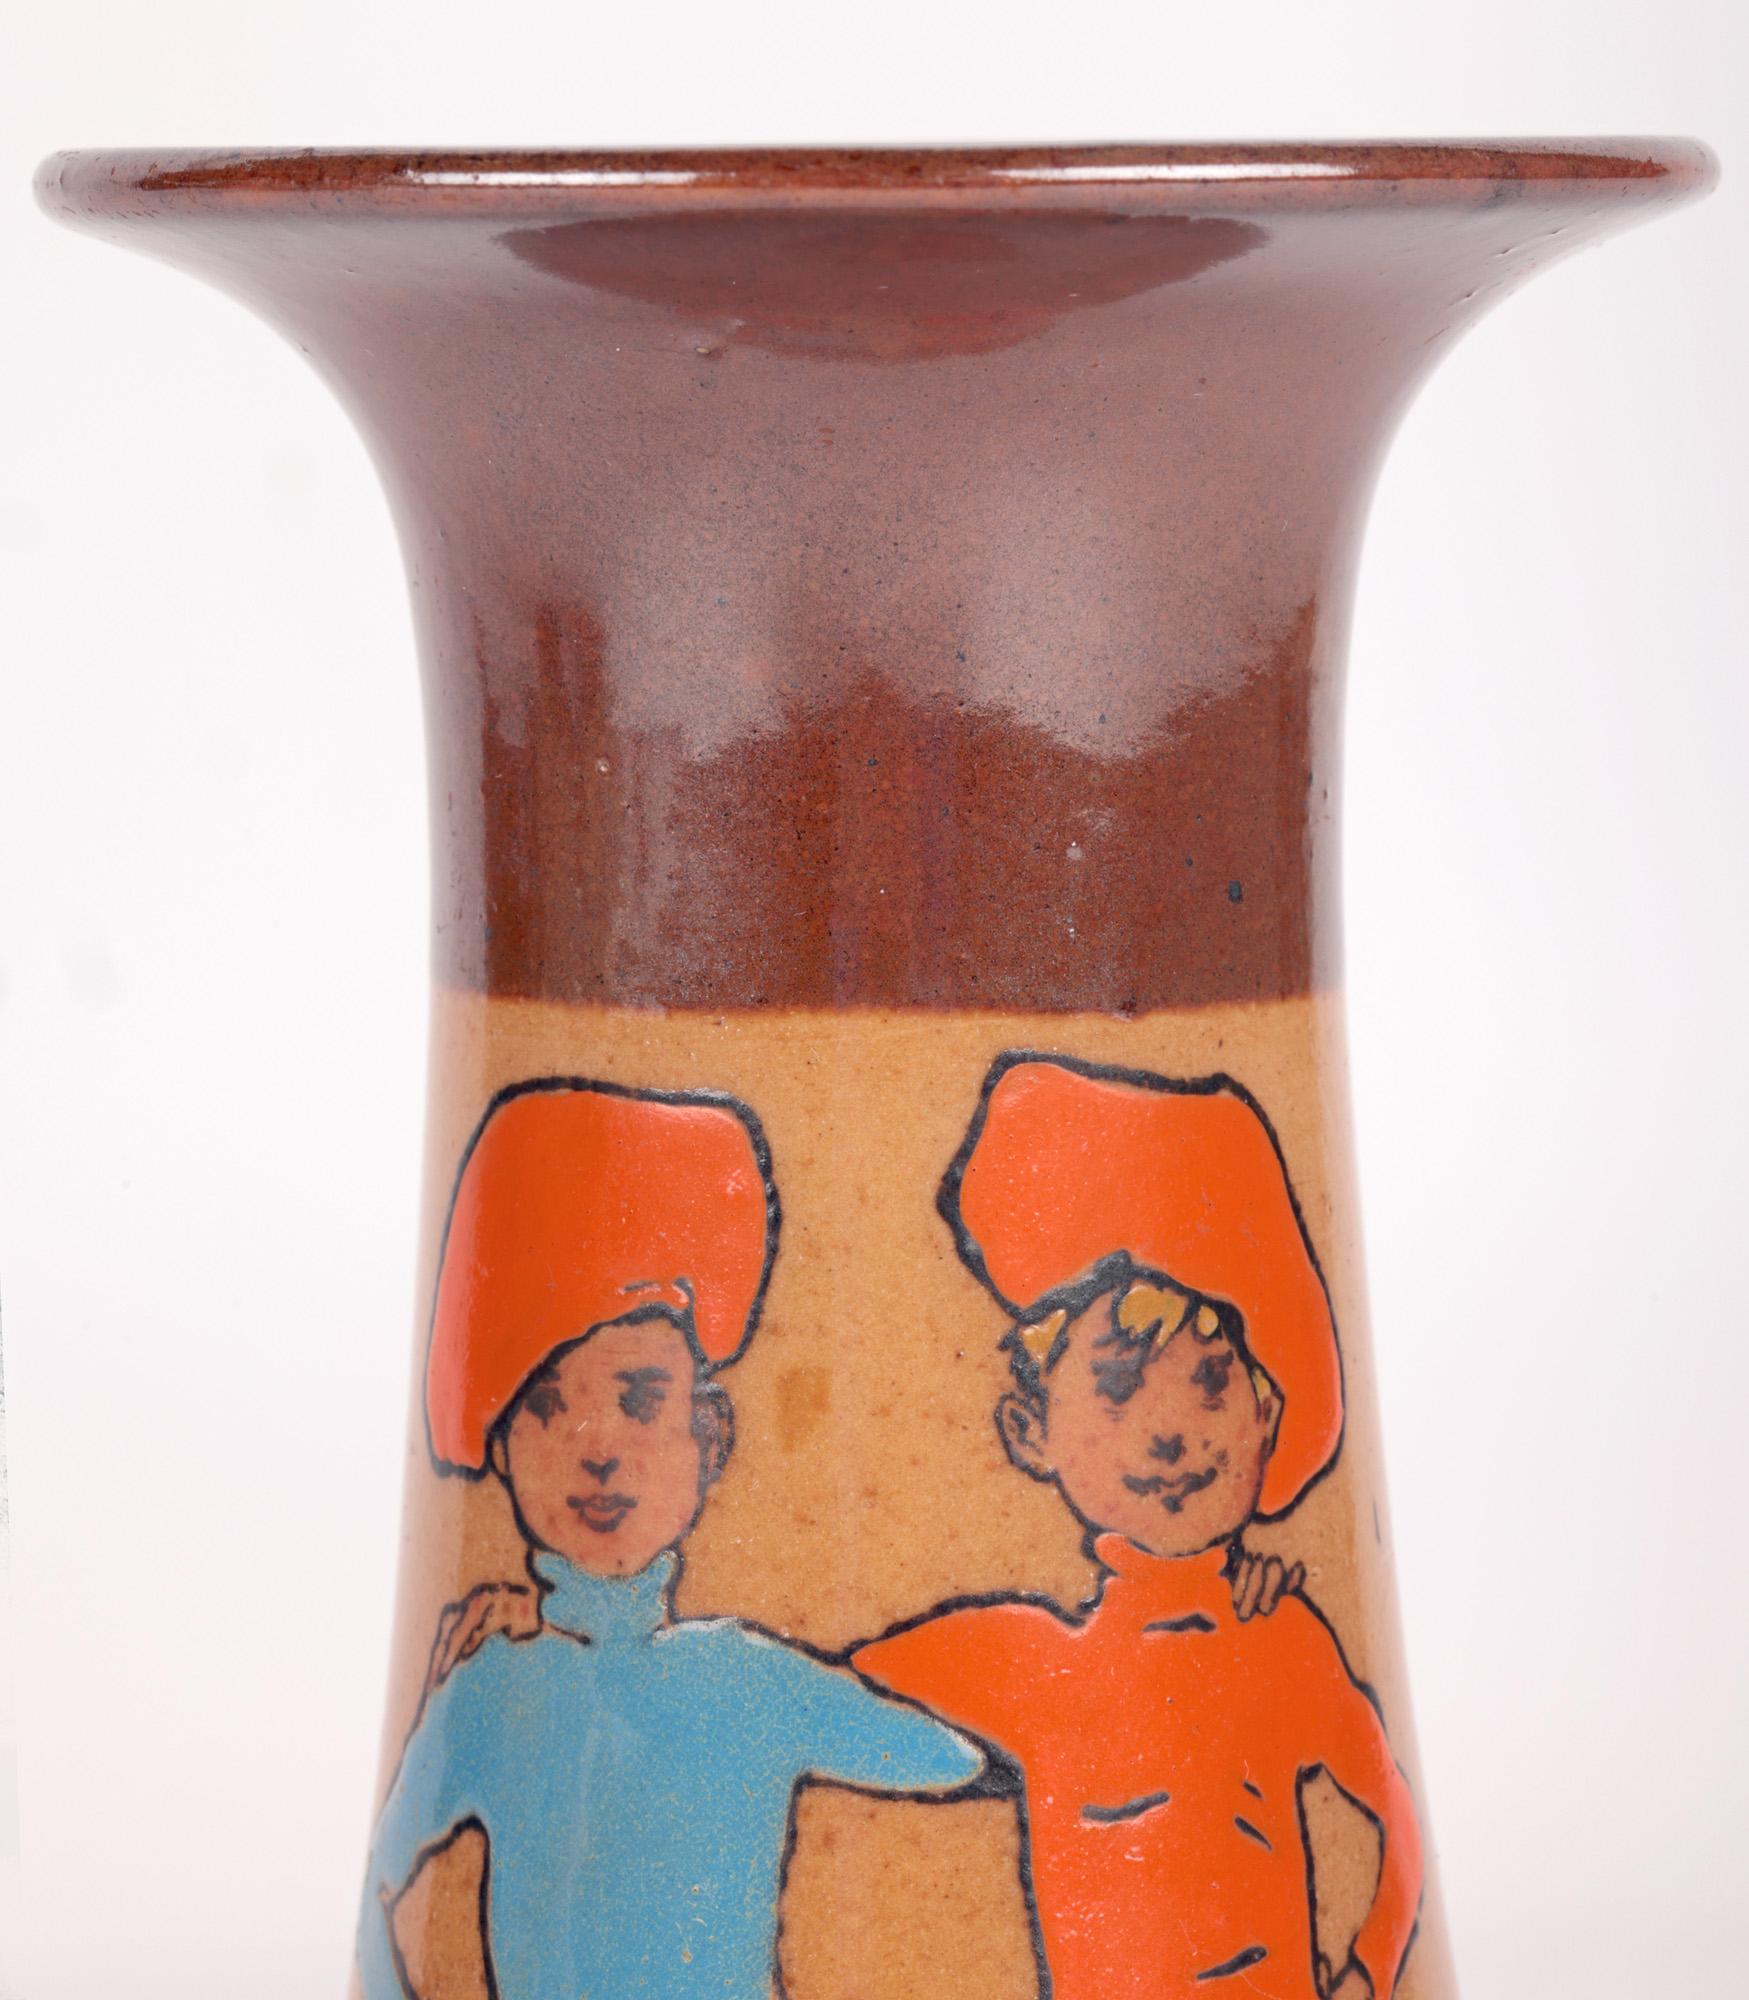 Un vase Doulton Lambeth Twins Ware très recherché, peint avec des jumeaux par le célèbre artiste et illustrateur John Hassall (britannique, 1868-1948) et datant d'environ 1905. Le vase en grès repose sur un pied en forme d'anneau, avec un corps